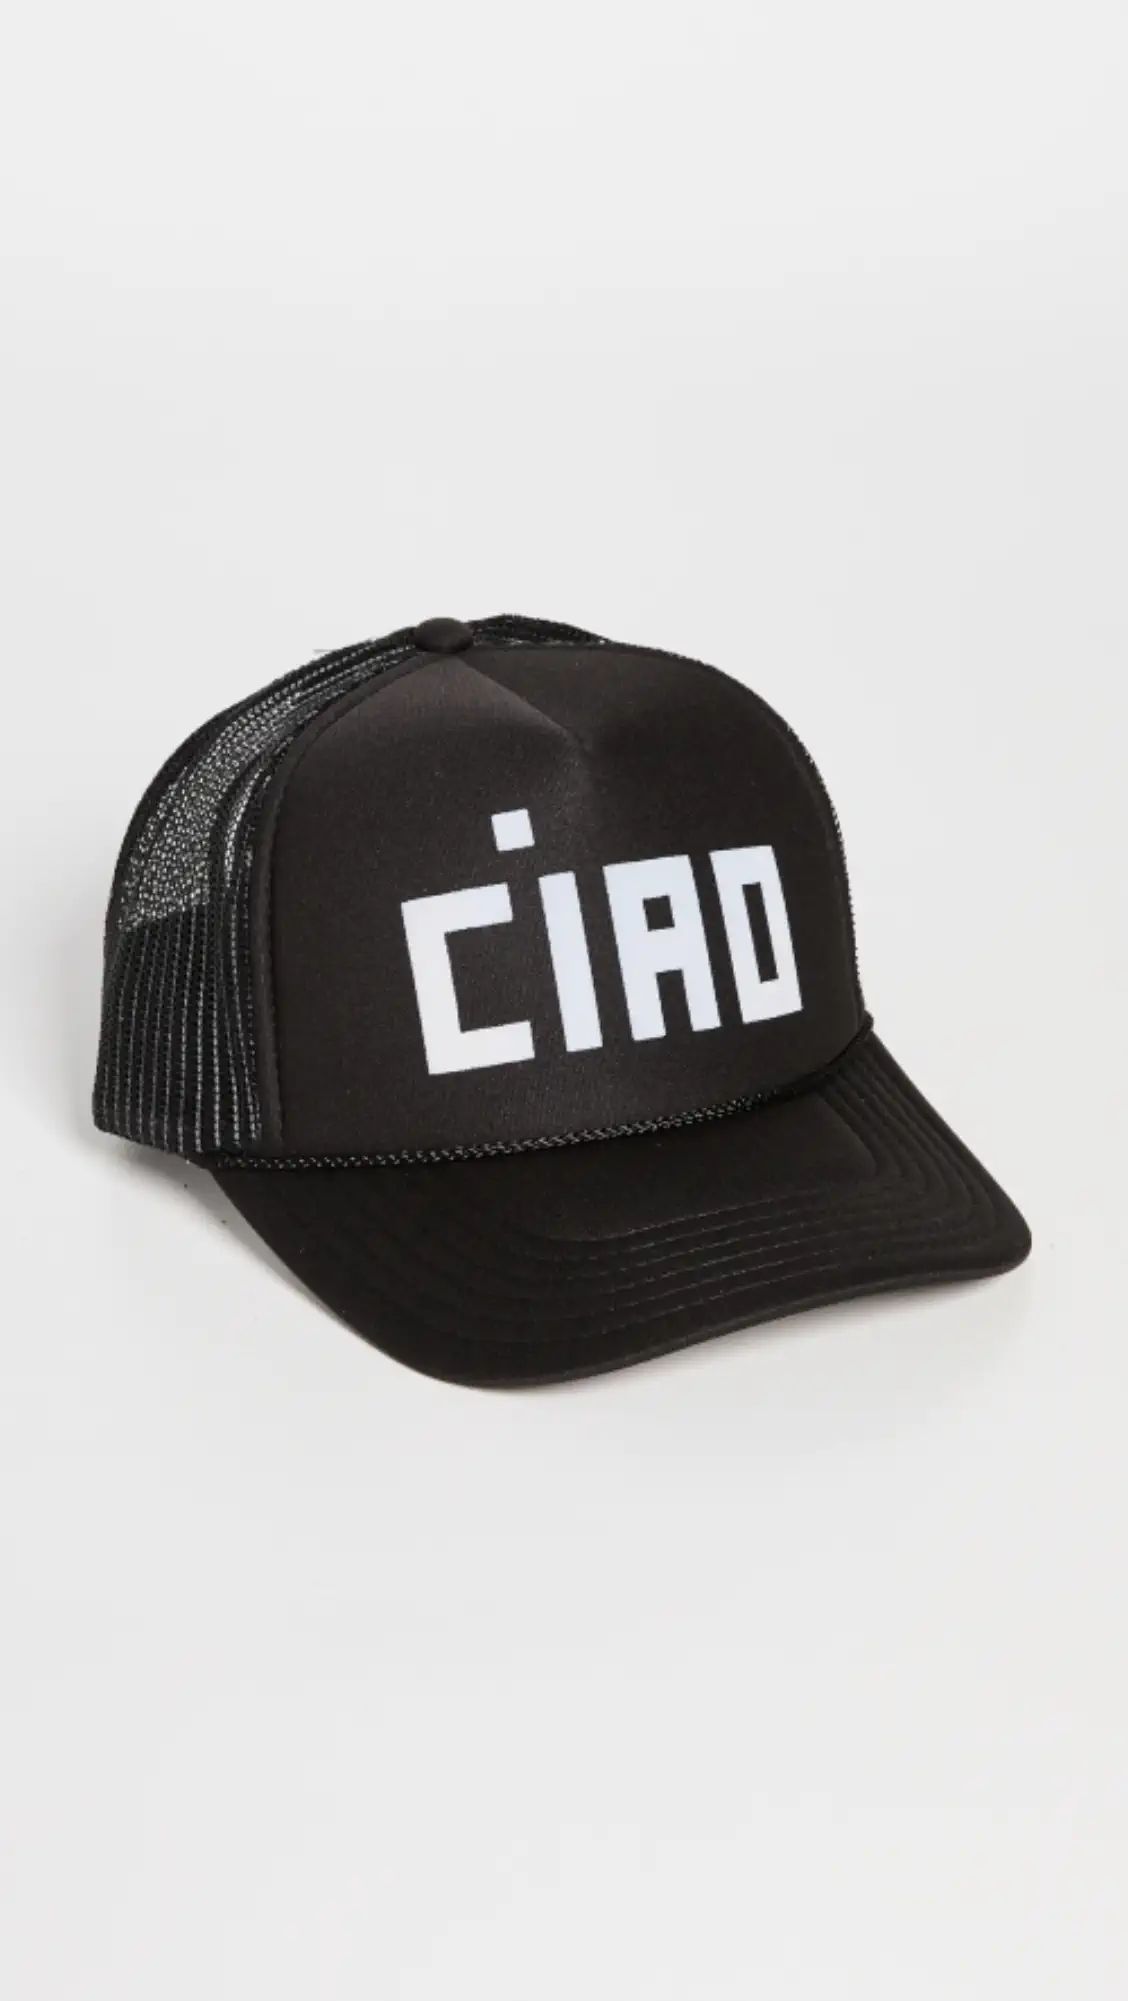 Ciao Trucker Hat | Shopbop